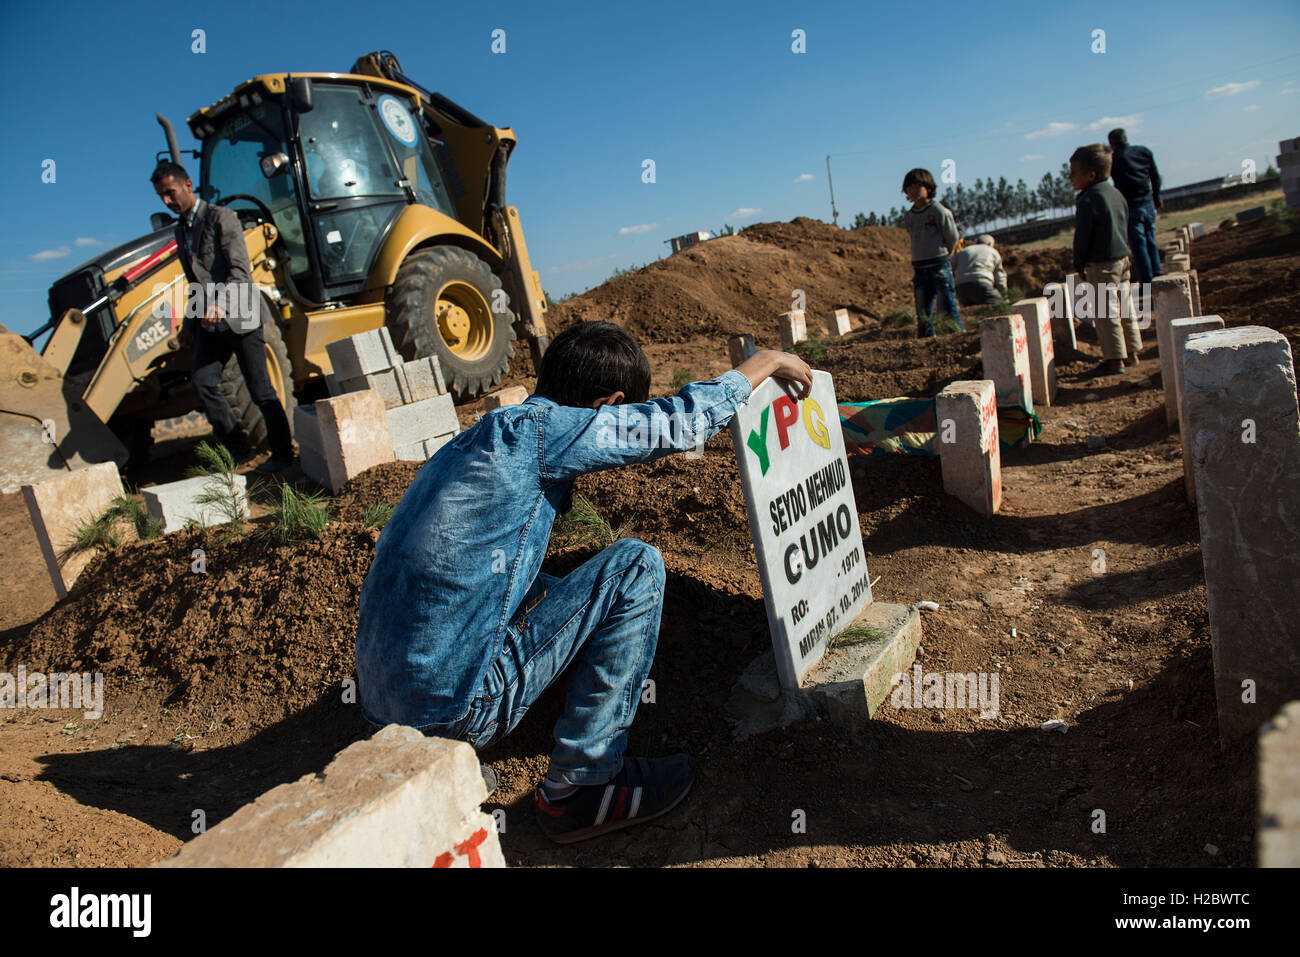 Ein kurdischer junge steht als nächstes das Grab seines Vaters, der bei der Belagerung von der syrischen Stadt Kobani, starb während des Kampfes gegen die islamischen Staat, in der türkischen Stadt Suruc nahe der türkisch-syrischen Grenze. Tausende von Kurden wurden gezwungen, die syrische Stadt Kobani aufzugeben, die von islamischen Staat Truppen belagert wird. Die meisten von ihnen Leben in Flüchtlingslagern in der türkischen Stadt Suruc. Stockfoto